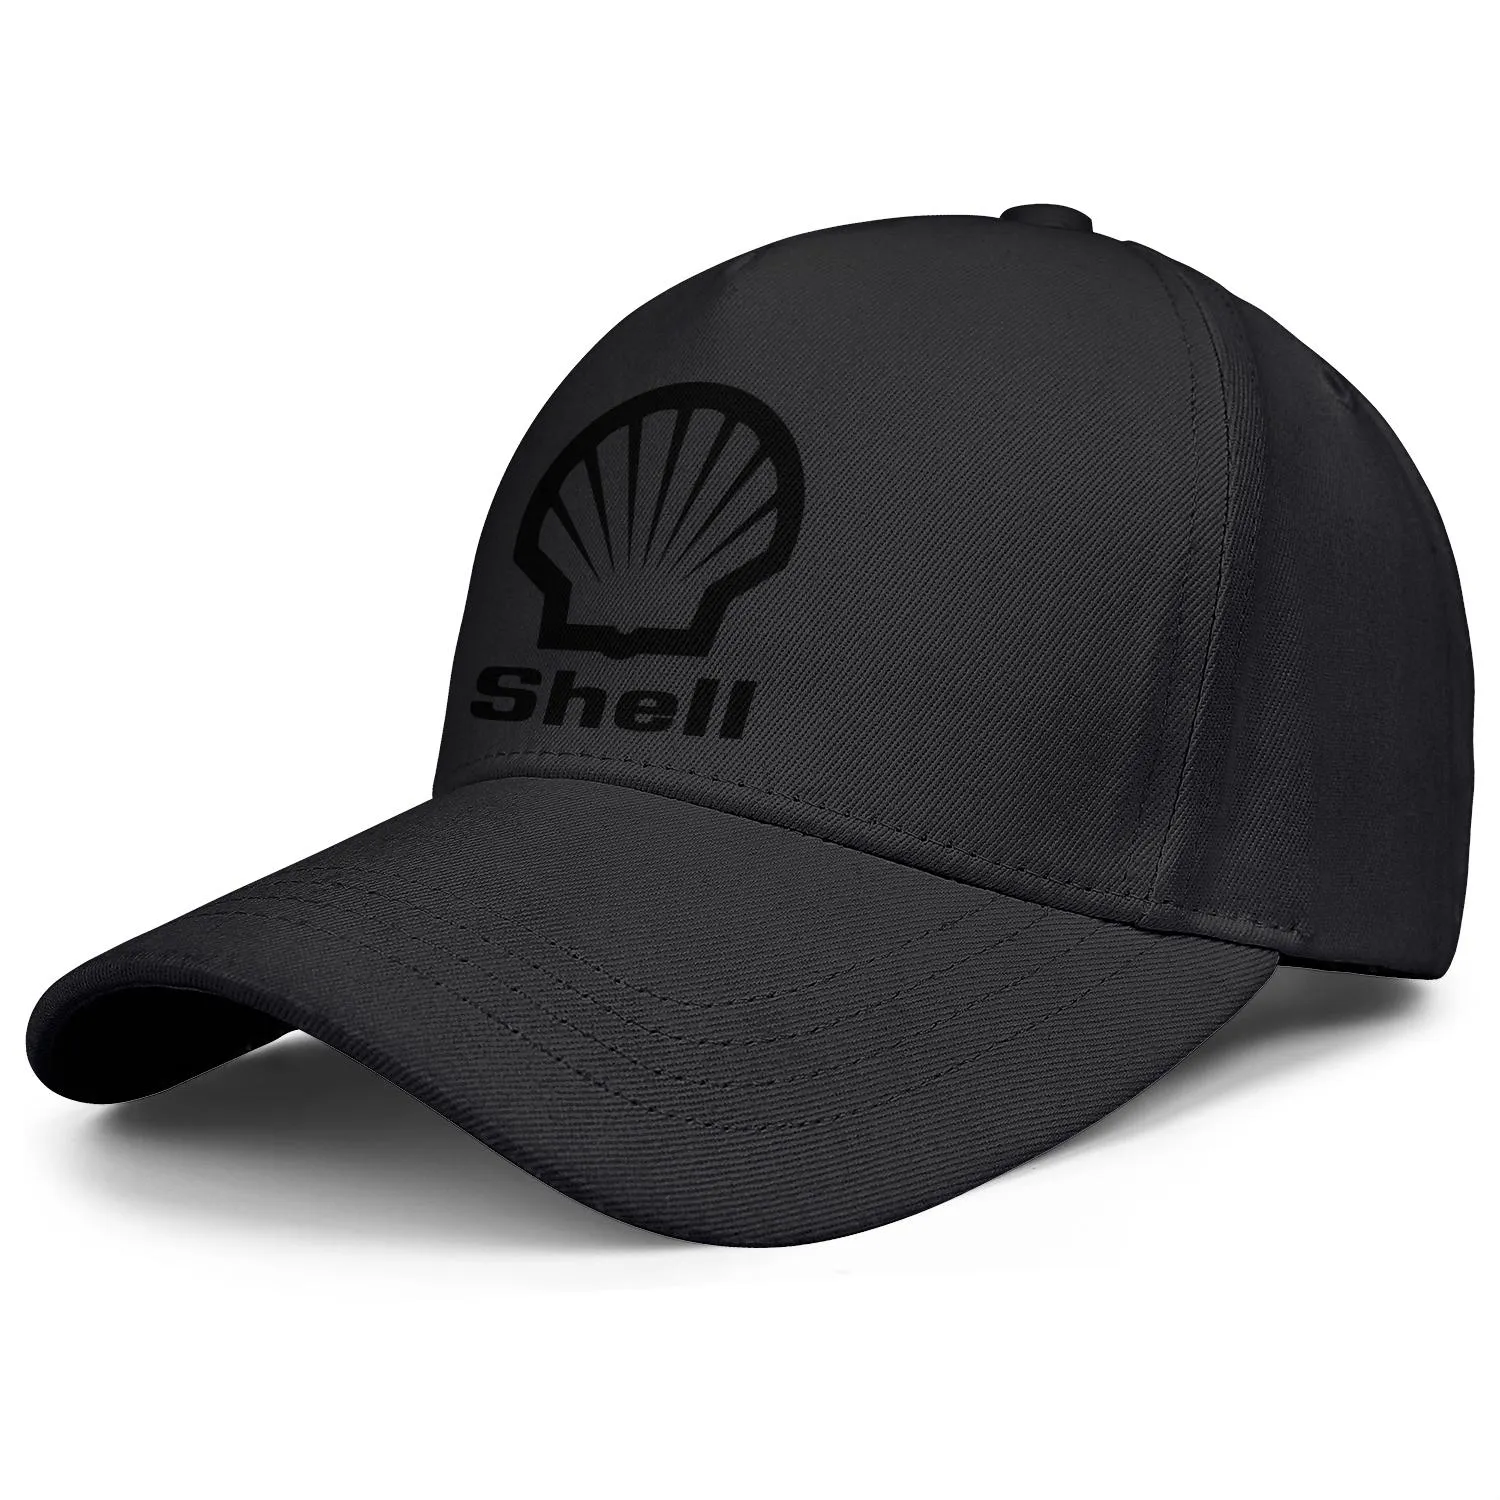 Shell Benzin benzin İstasyonu Logo Erkek ve Kadınlar Ayarlanabilir Kamyoner Kapak Takılmış Vintage Sevimli Beyzbolhatlar Bulucu Benzin Symbo9572626